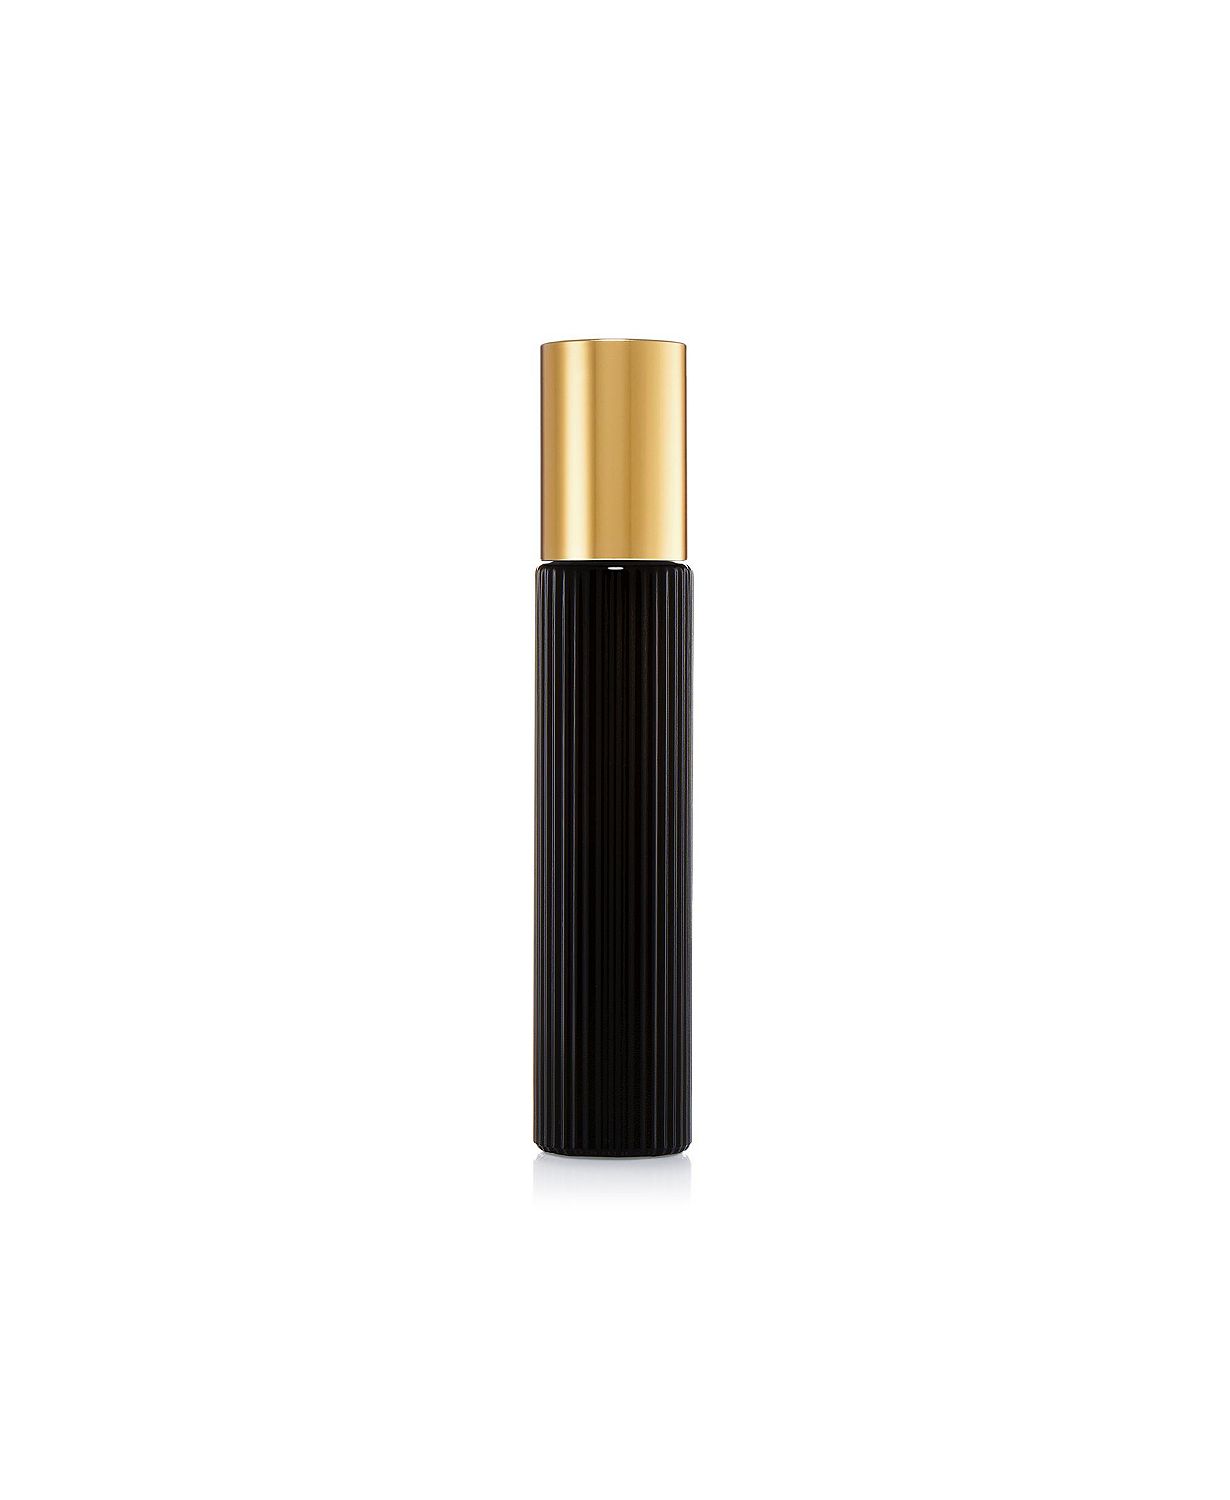 Black Orchid Eau de Parfum Travel Spray, 0.34-oz.